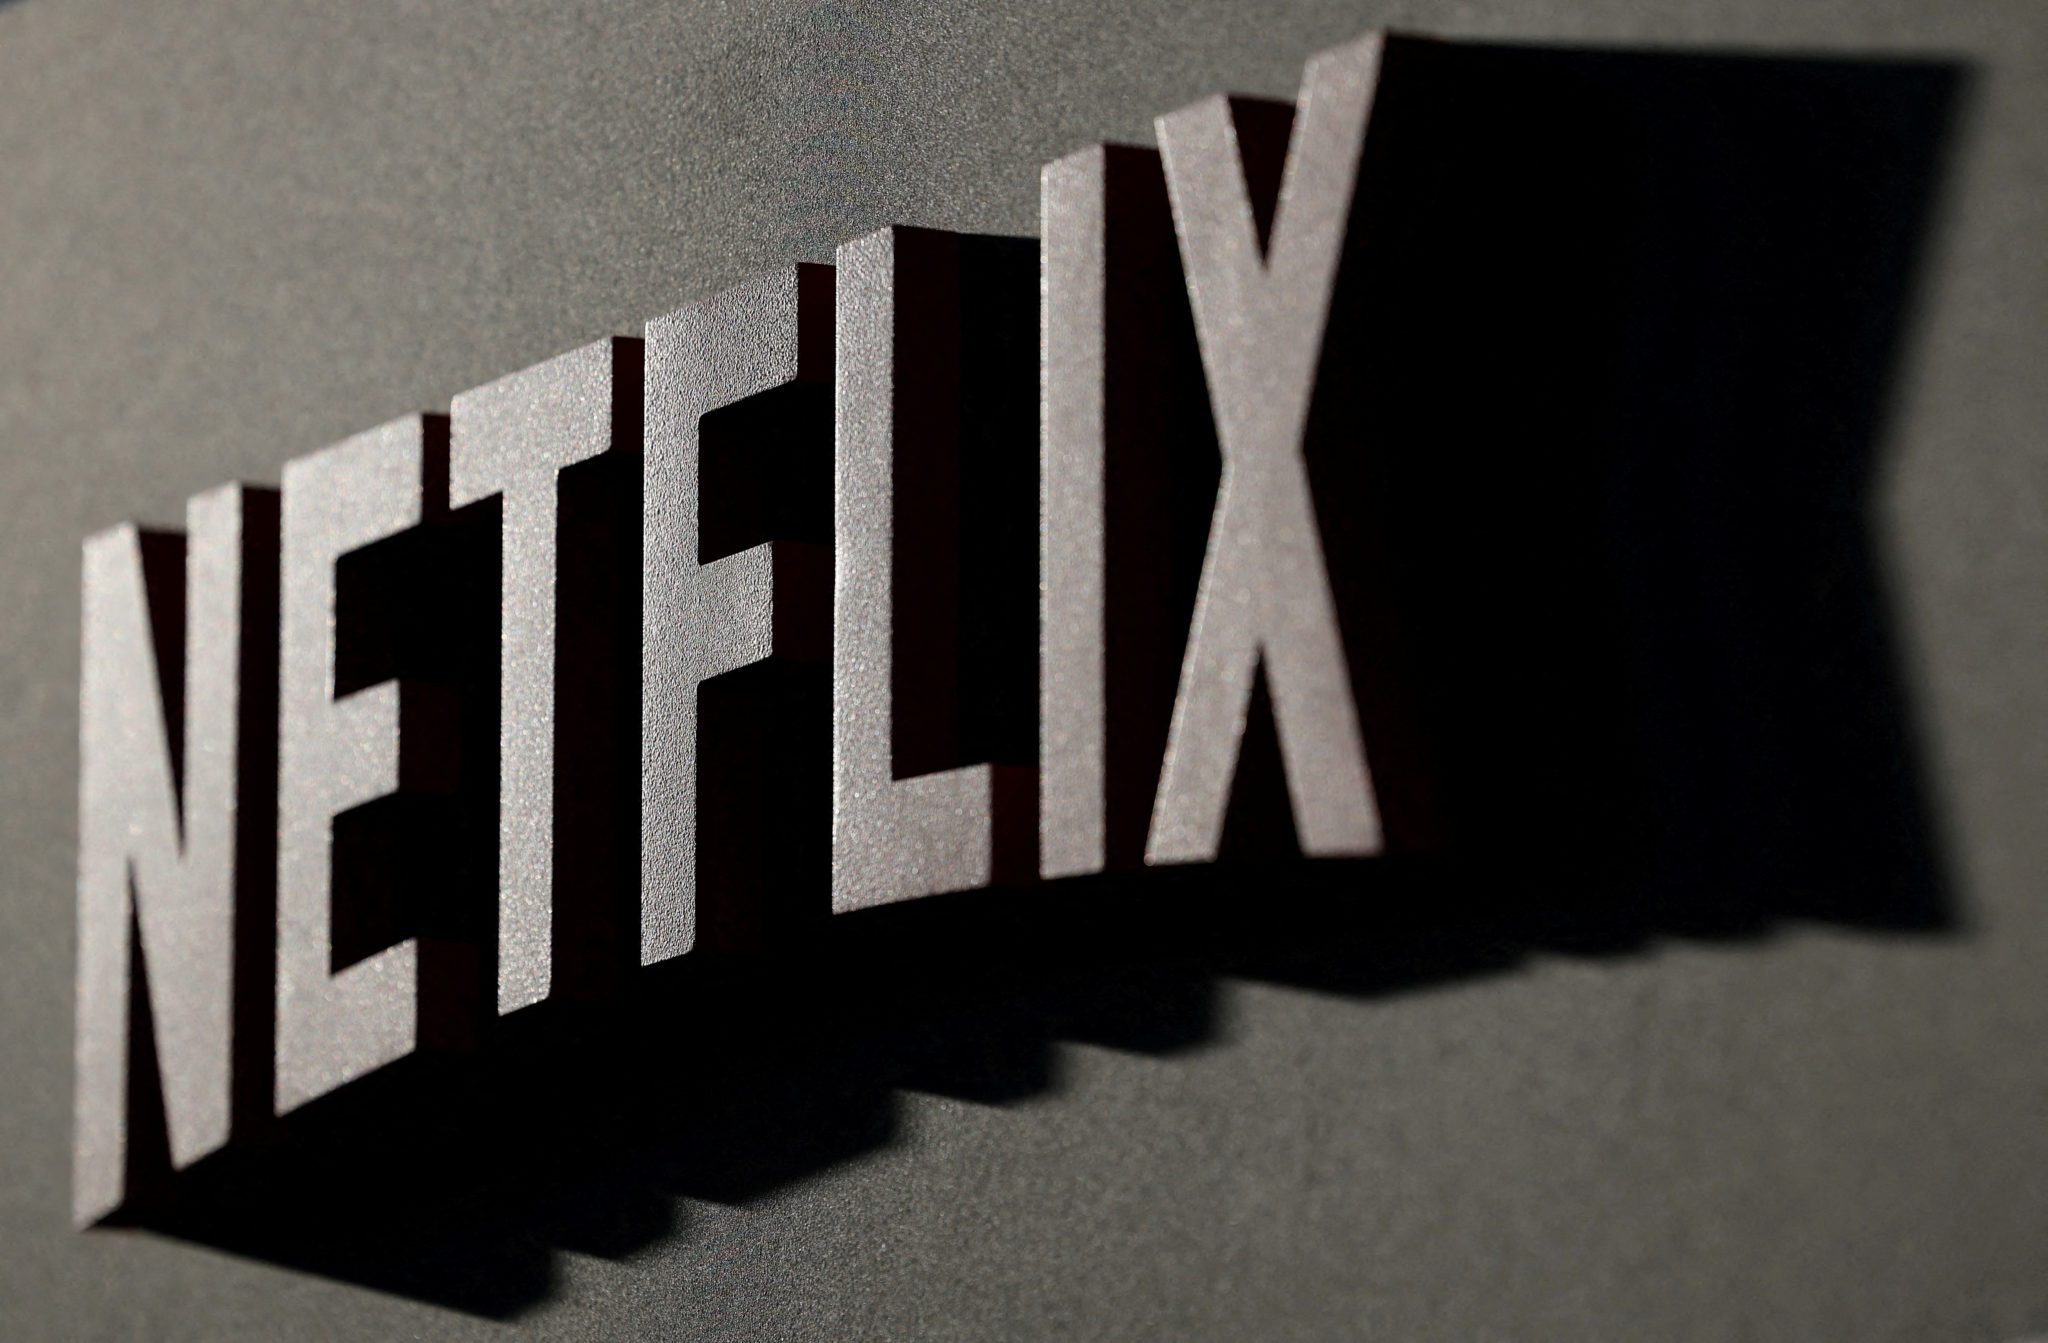 Netflix ganha quase 6 milhões de assinantes após taxa para o  compartilhamento de senha 